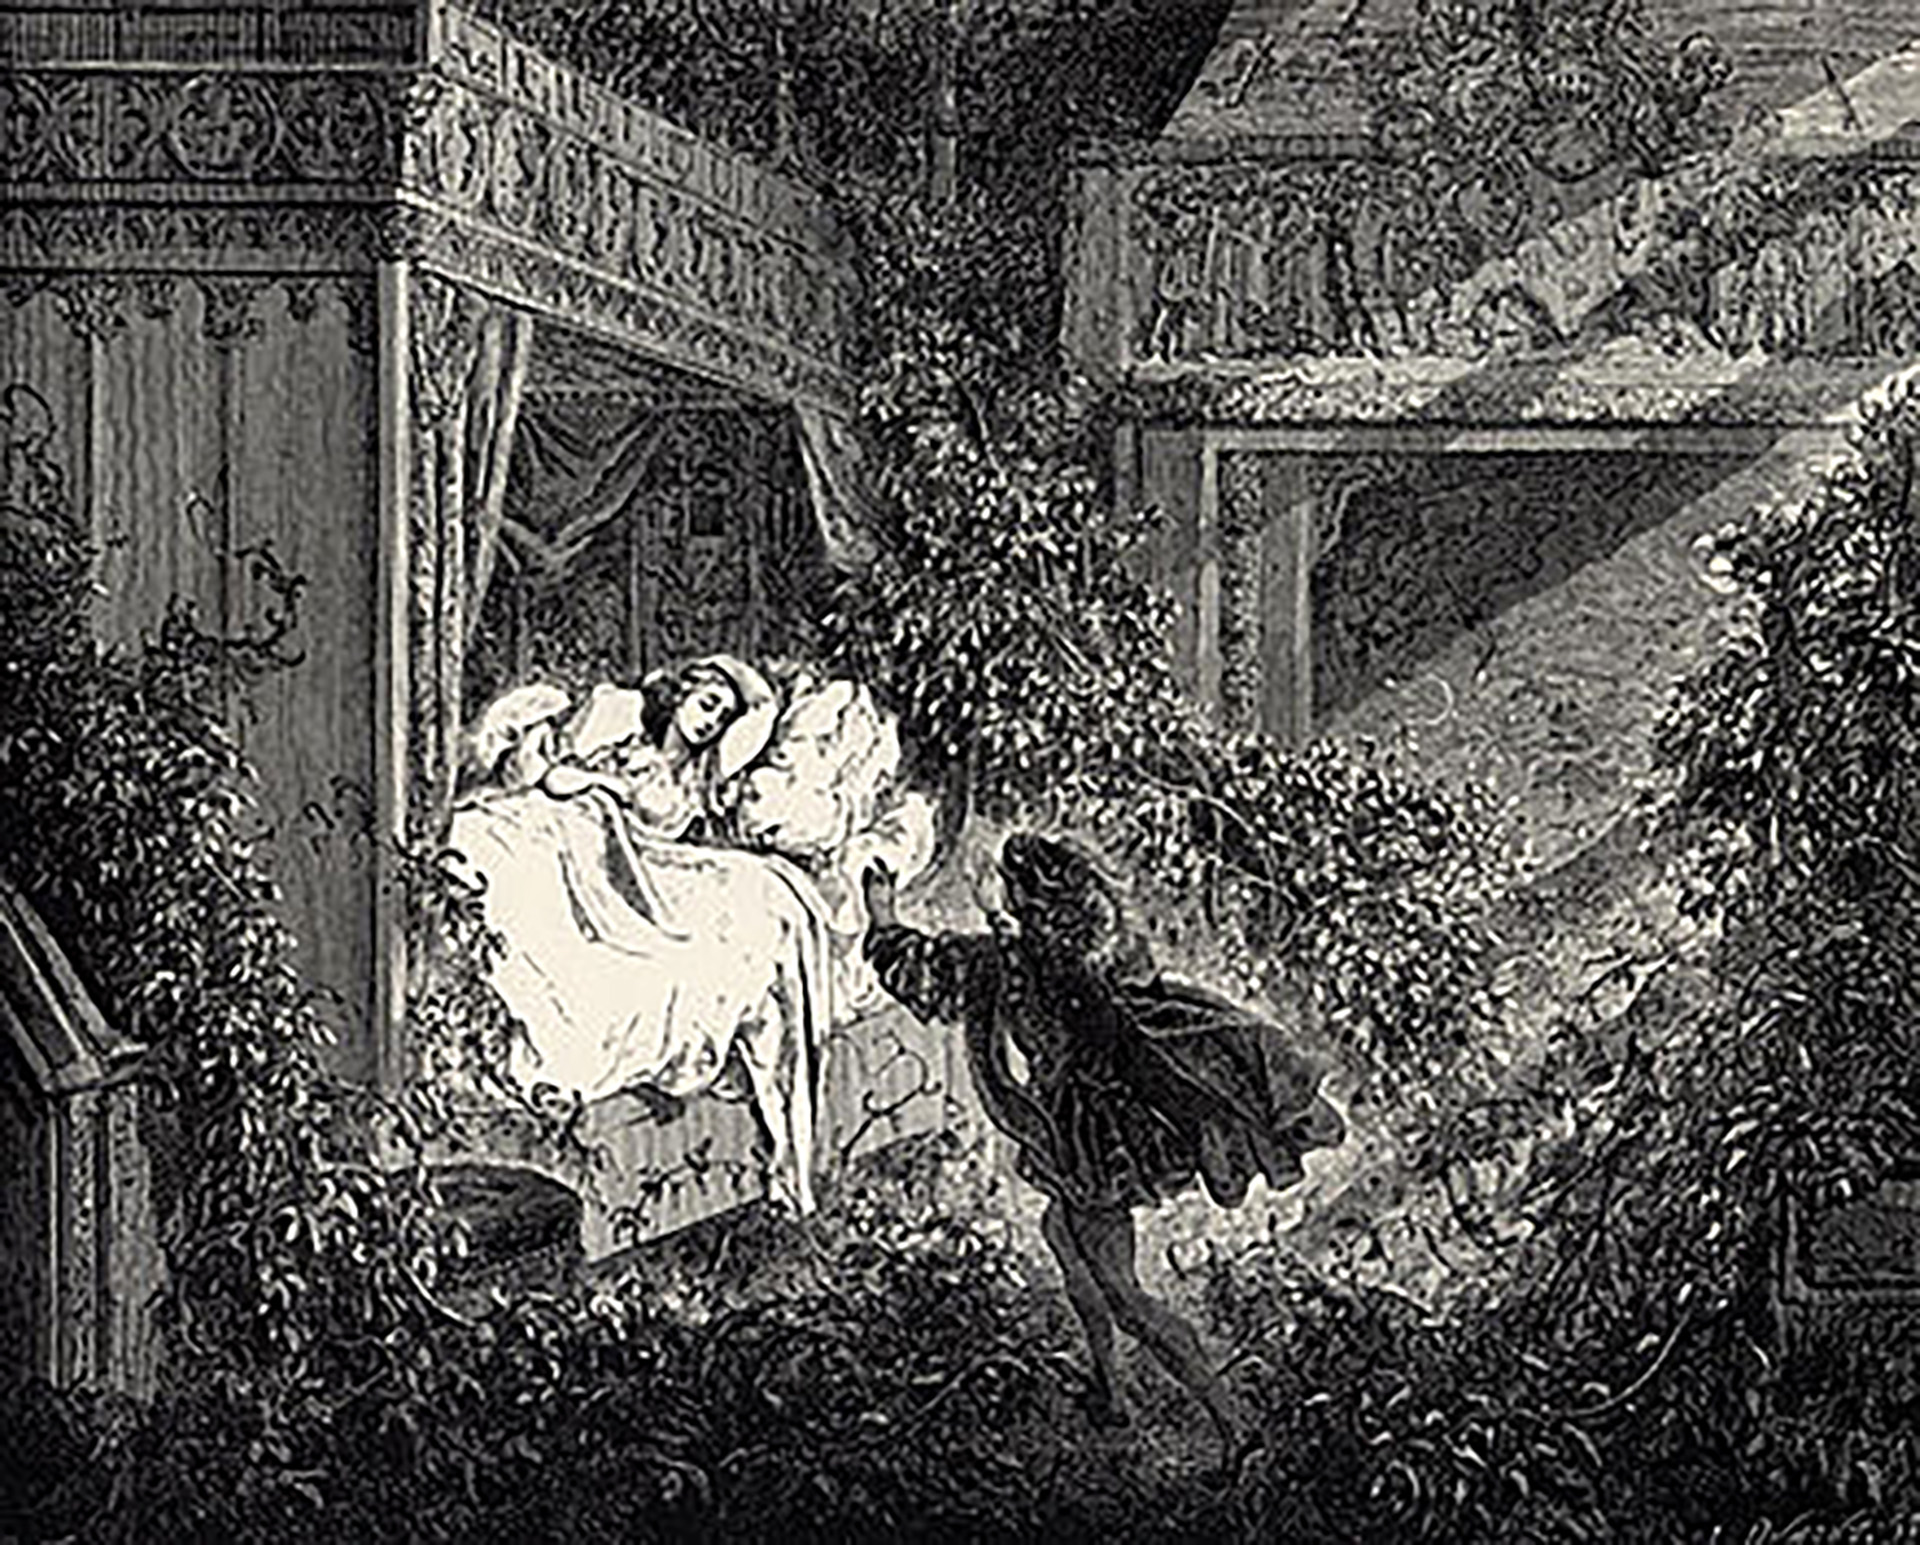 La bella durmiente, Gustave Doré, 1867